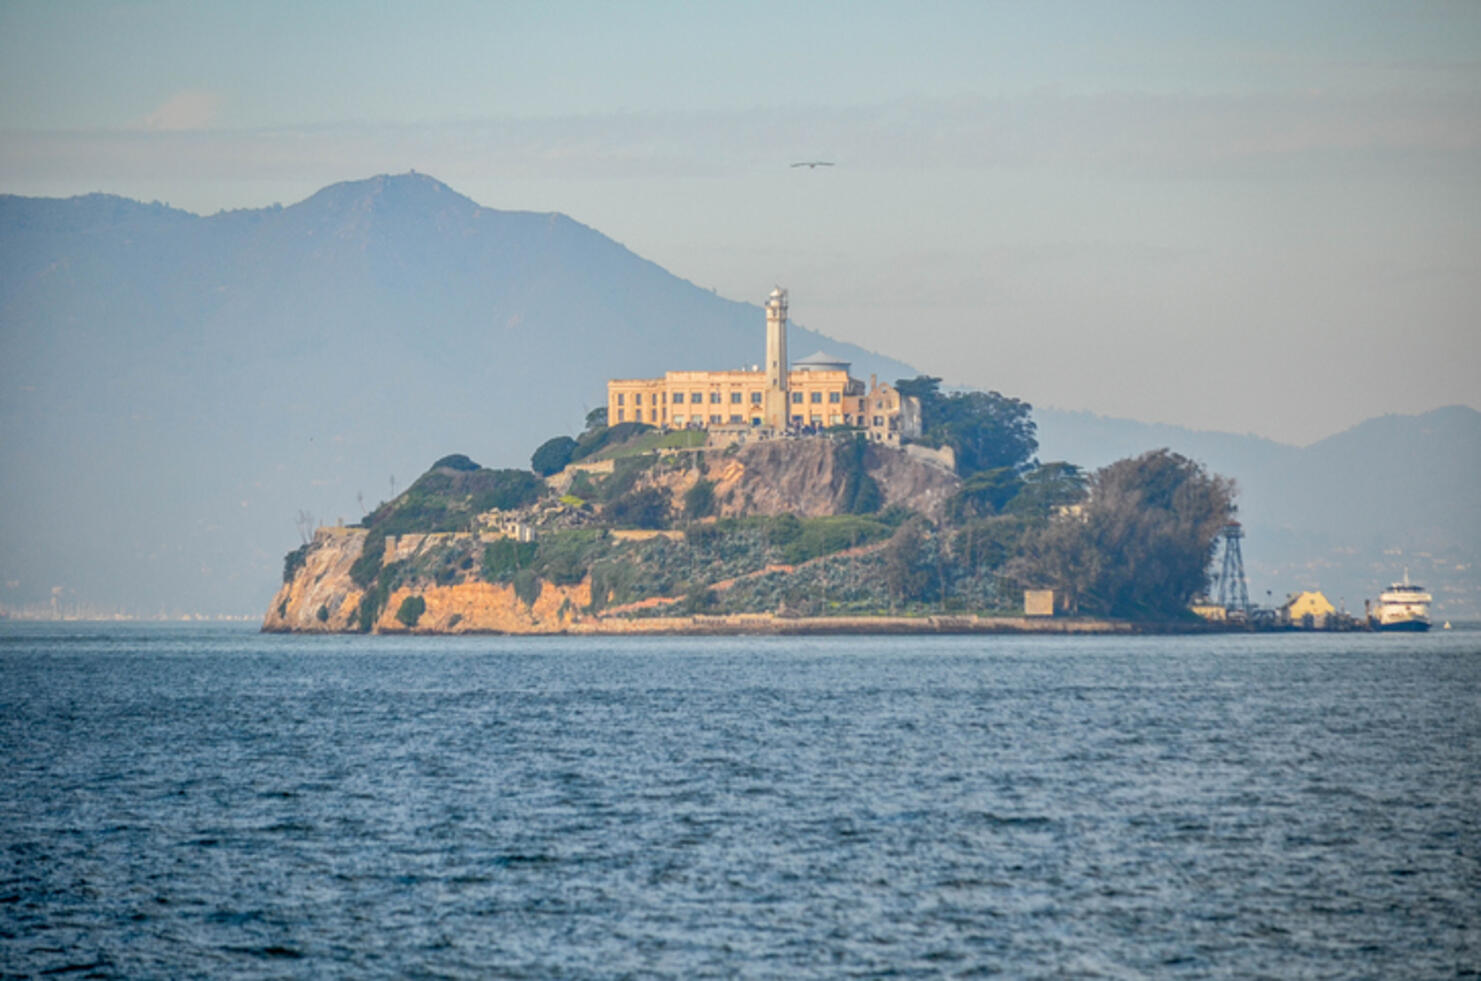 Anglin Brothers Escape from Alcatraz Prison